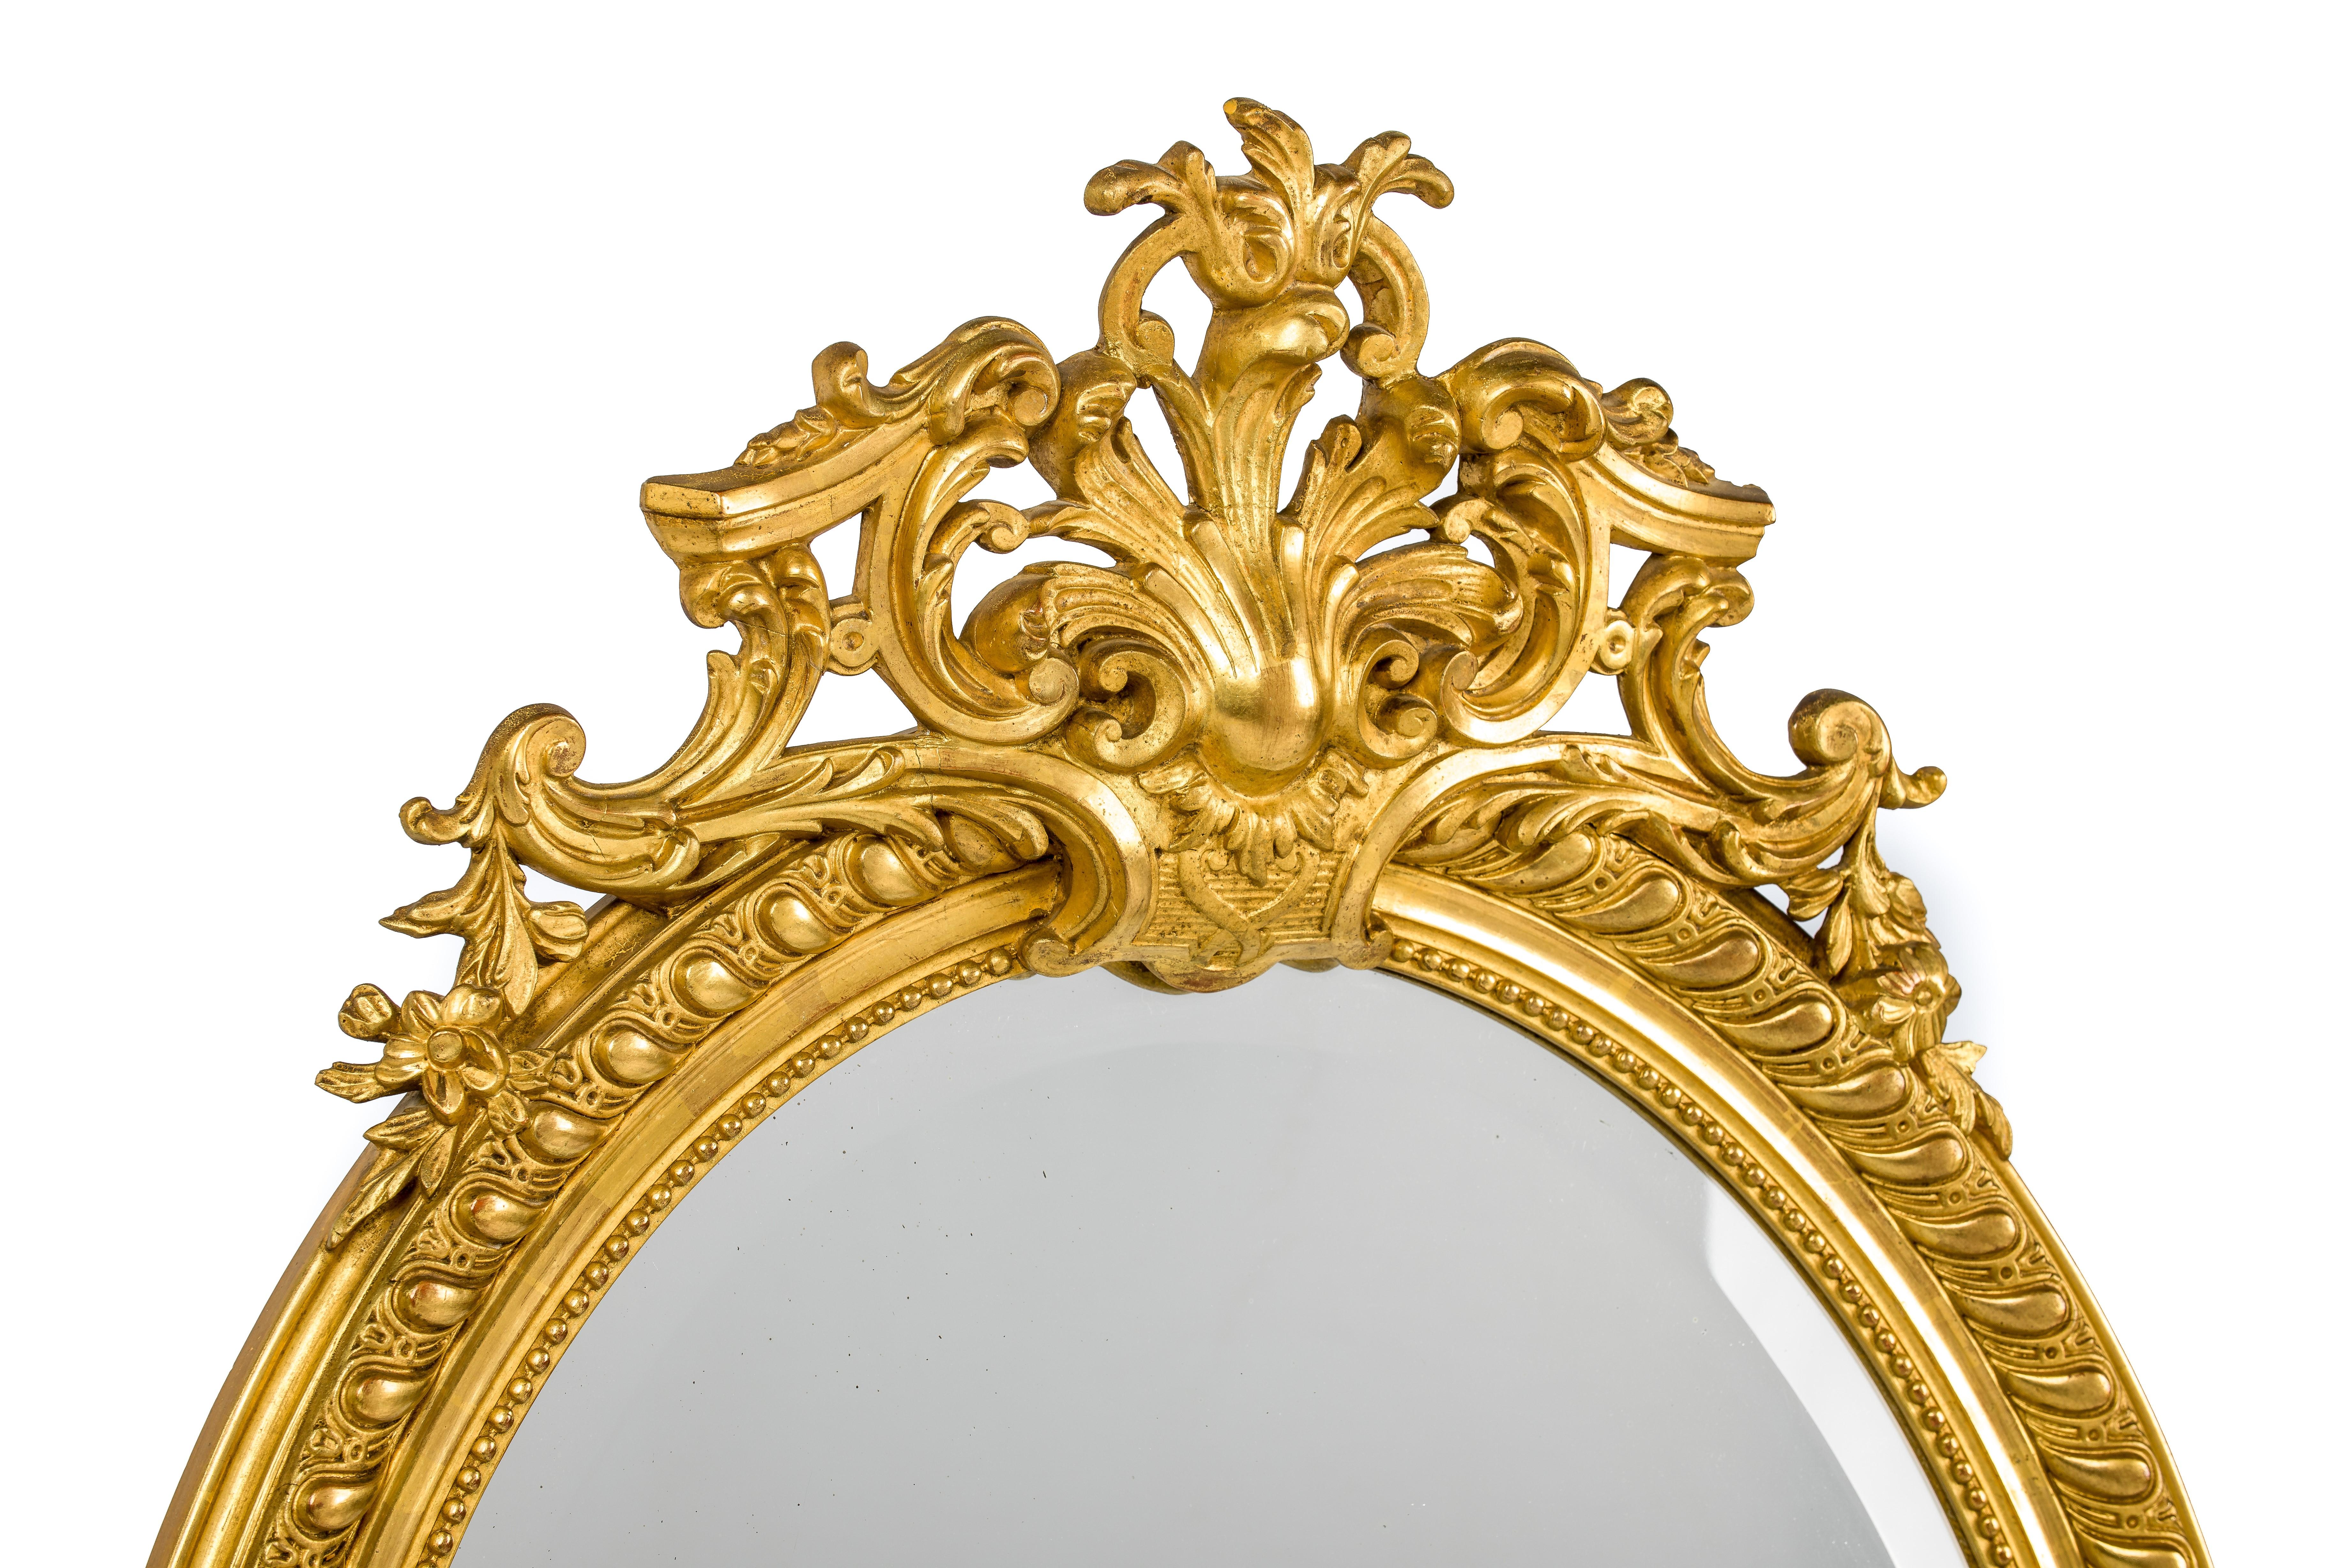 Ce magnifique miroir ovale ancien, doré à la feuille d'or, a été fabriqué dans le sud de la France à la fin du XIXe siècle. L'ornement supérieur est centré sur un fronton d'acanthe flanqué de volutes en C, d'acanthes et d'éléments floraux.